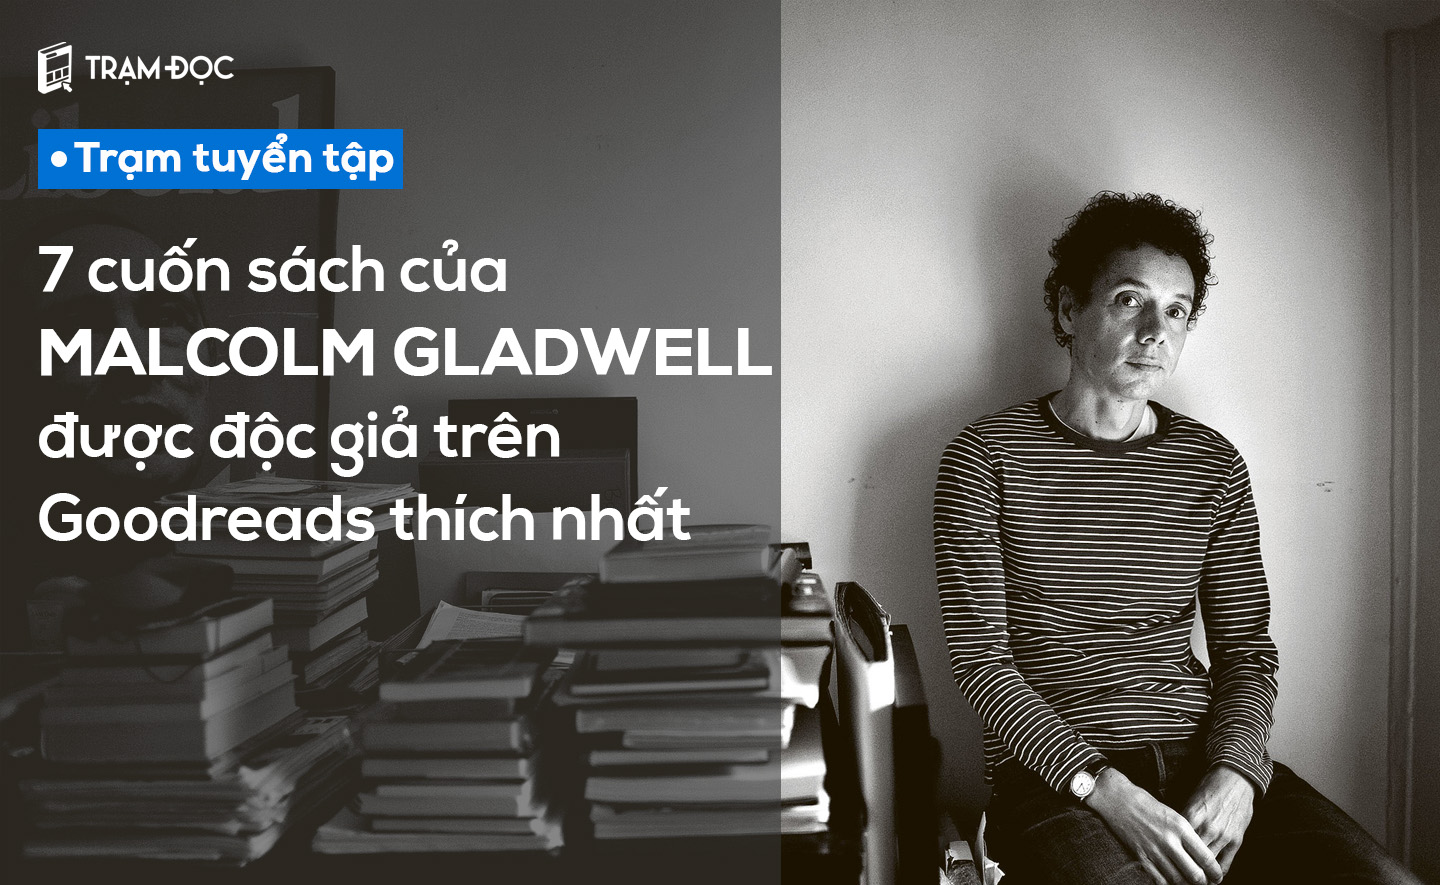 7 cuốn sách của Malcolm Gladwell được độc giả trên Goodreads thích nhất